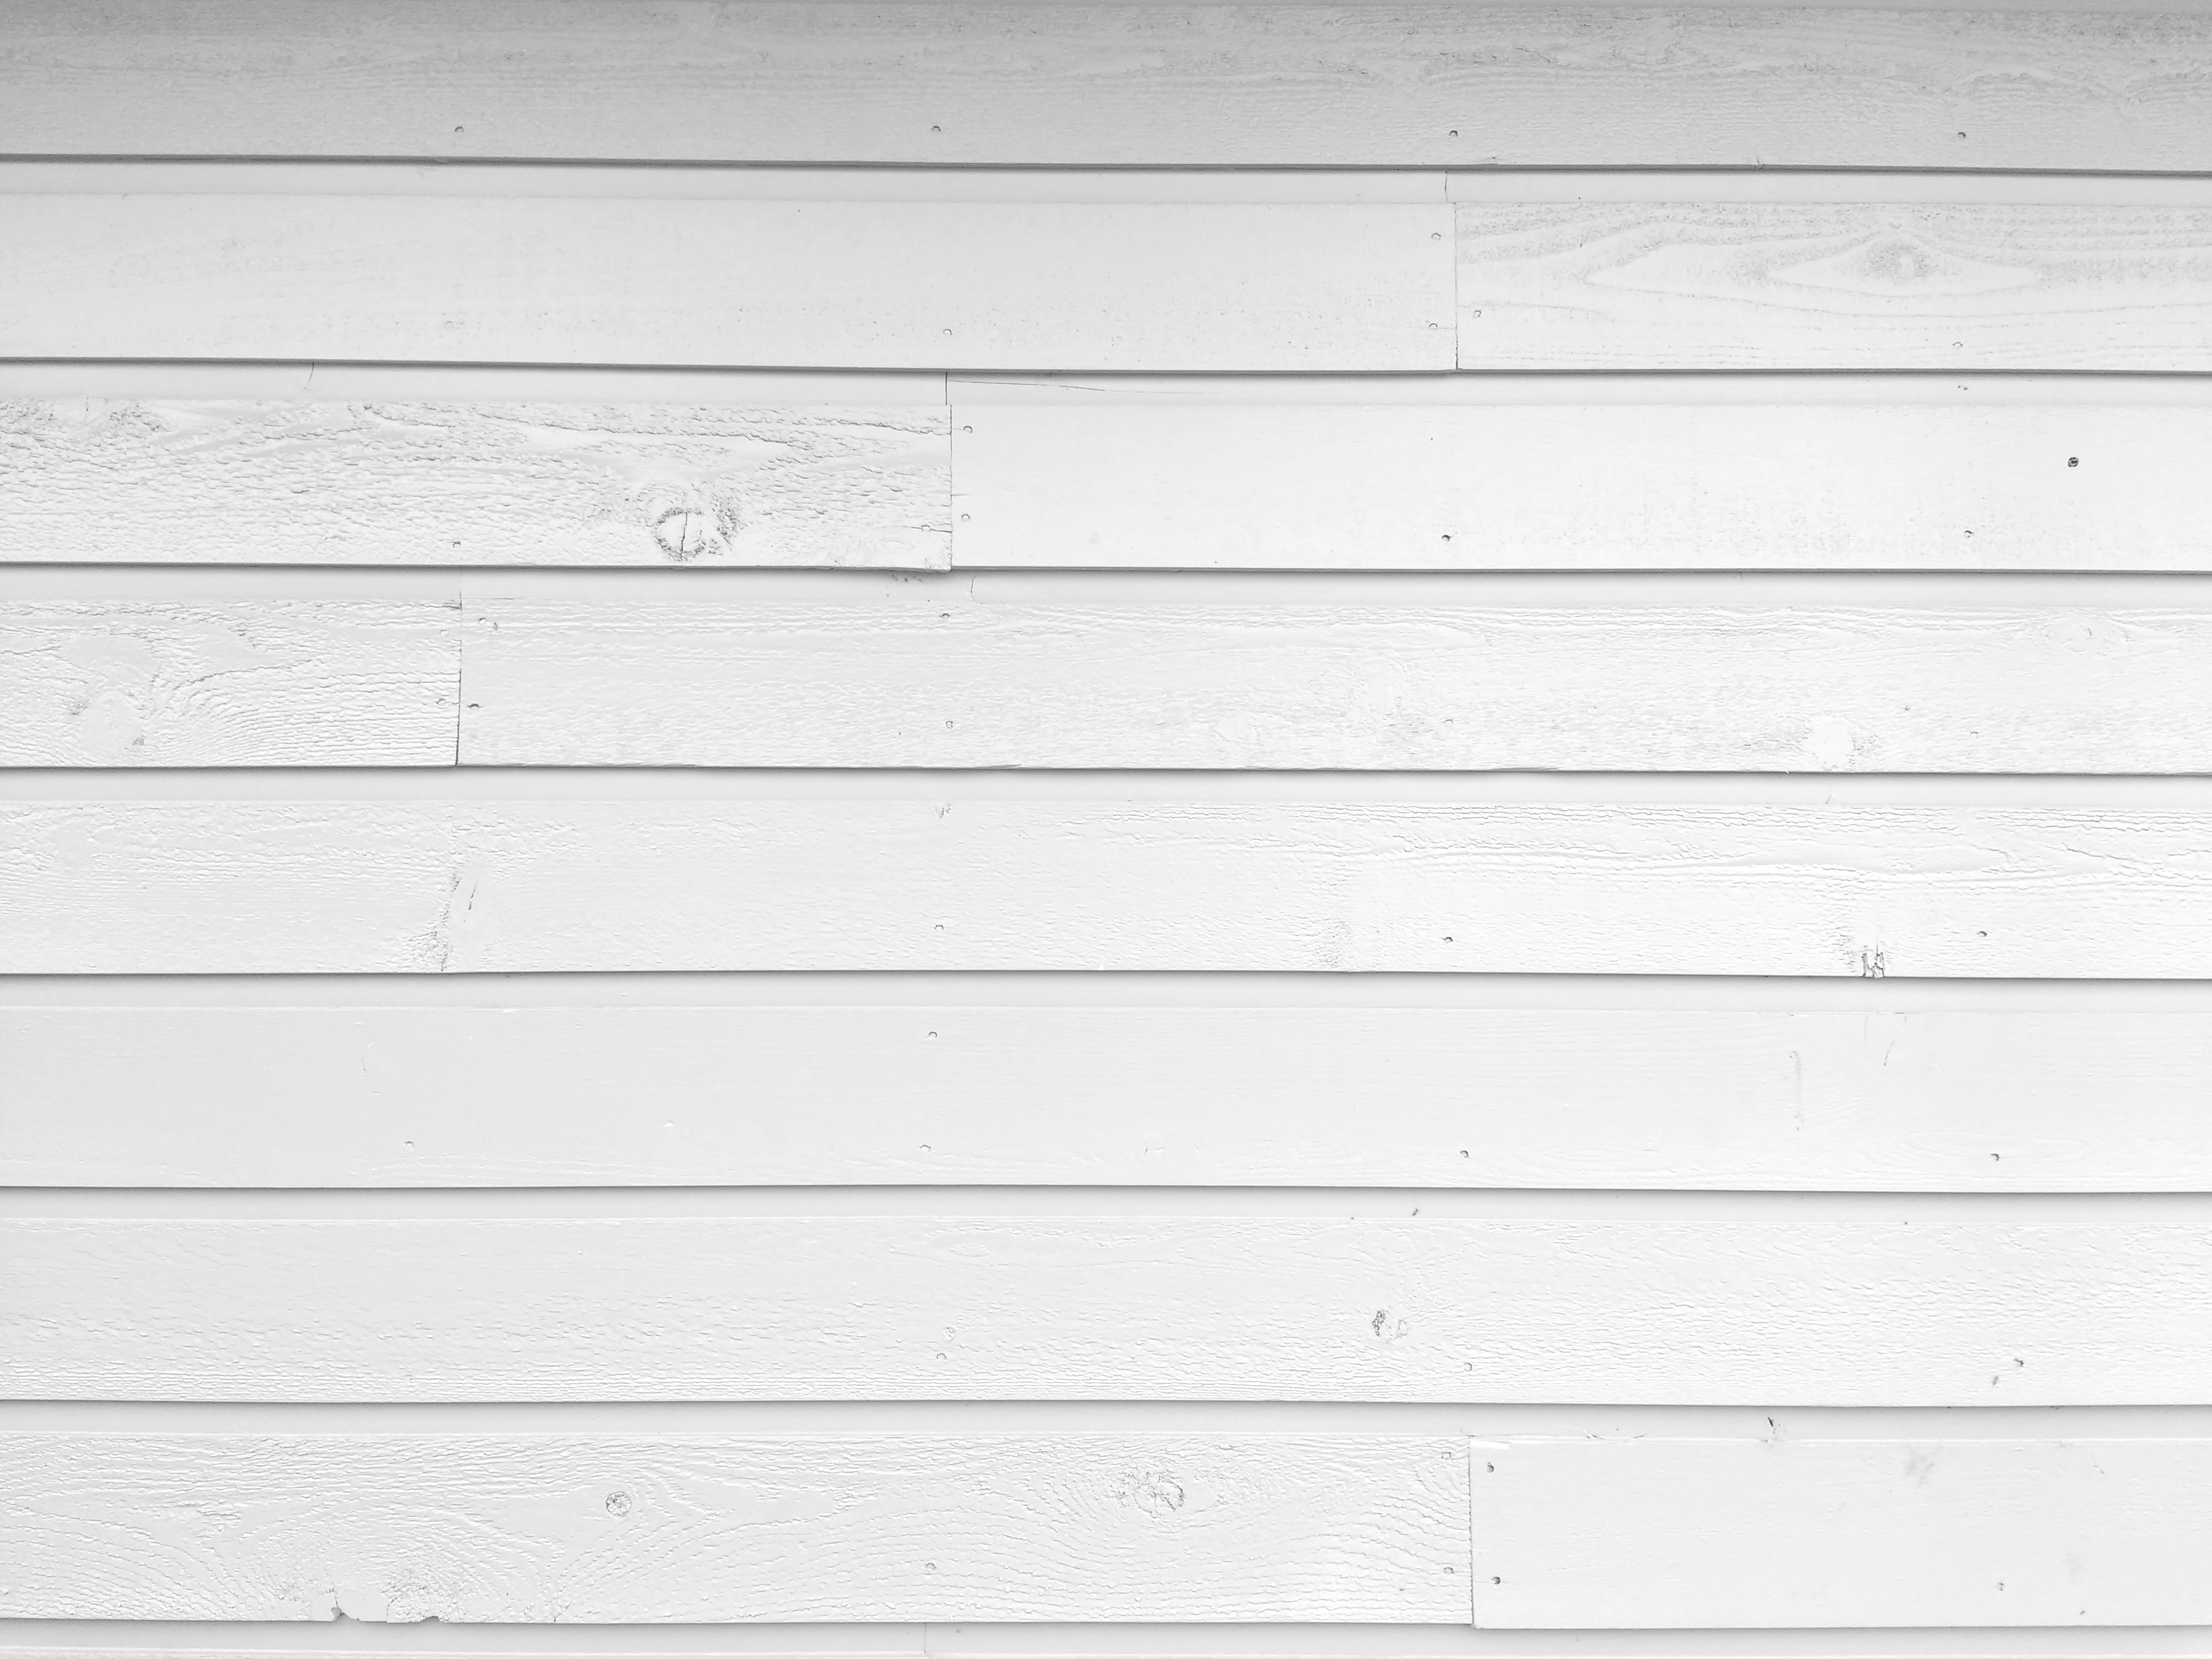 White Drop Channel Wood Siding Texture Picture Free Photograph Photos Public Domain